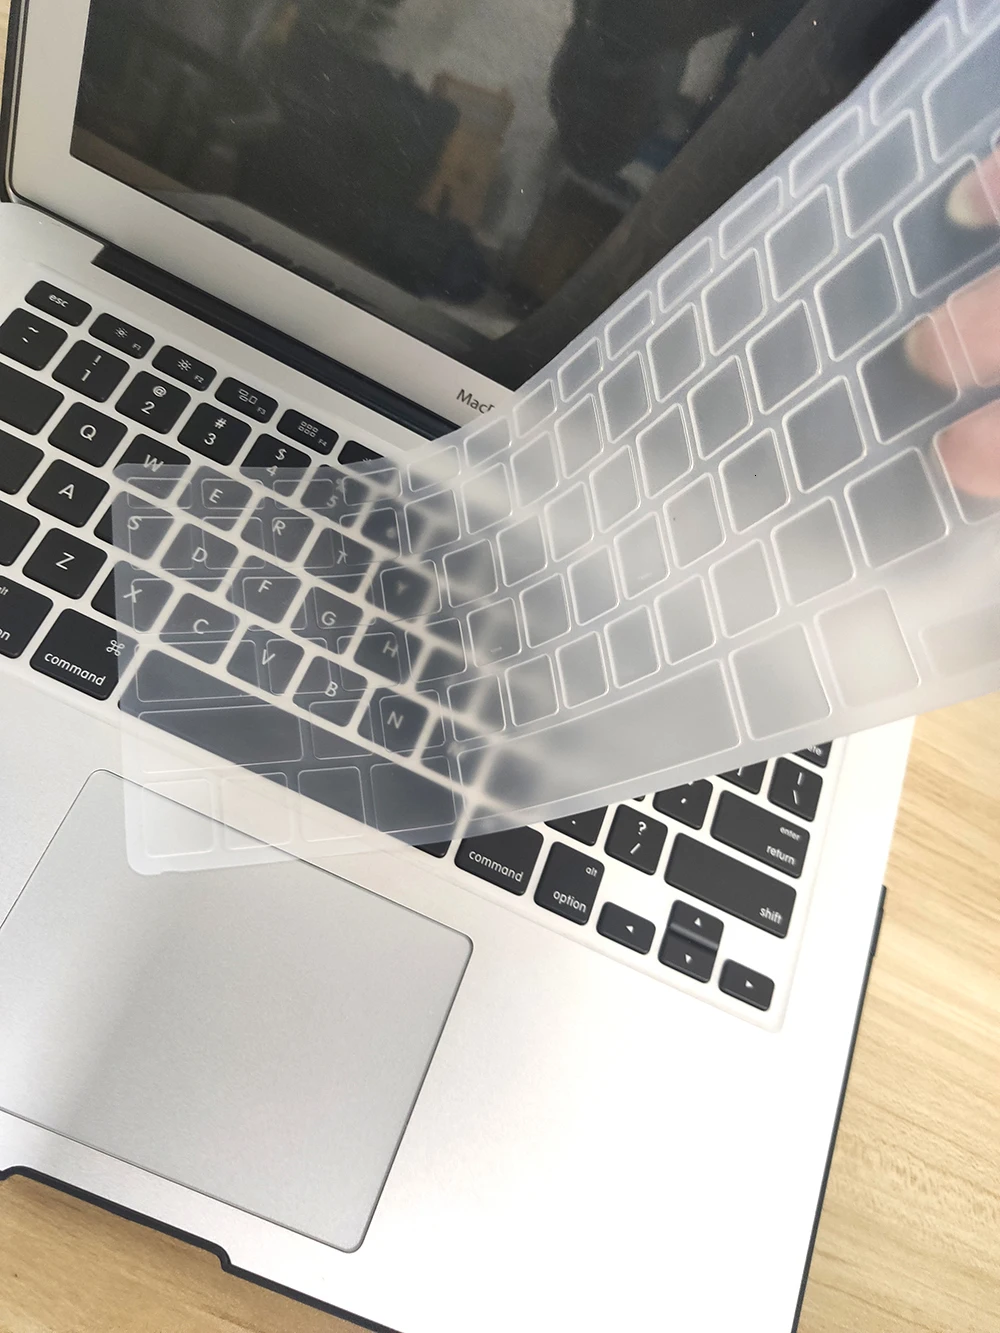 Чехол для клавиатуры для Apple Macbook Air Pro retina 11 12 13 15, чехол для клавиатуры для MacBook 13 15 дюймов, чехол для клавиатуры с сенсорной панелью